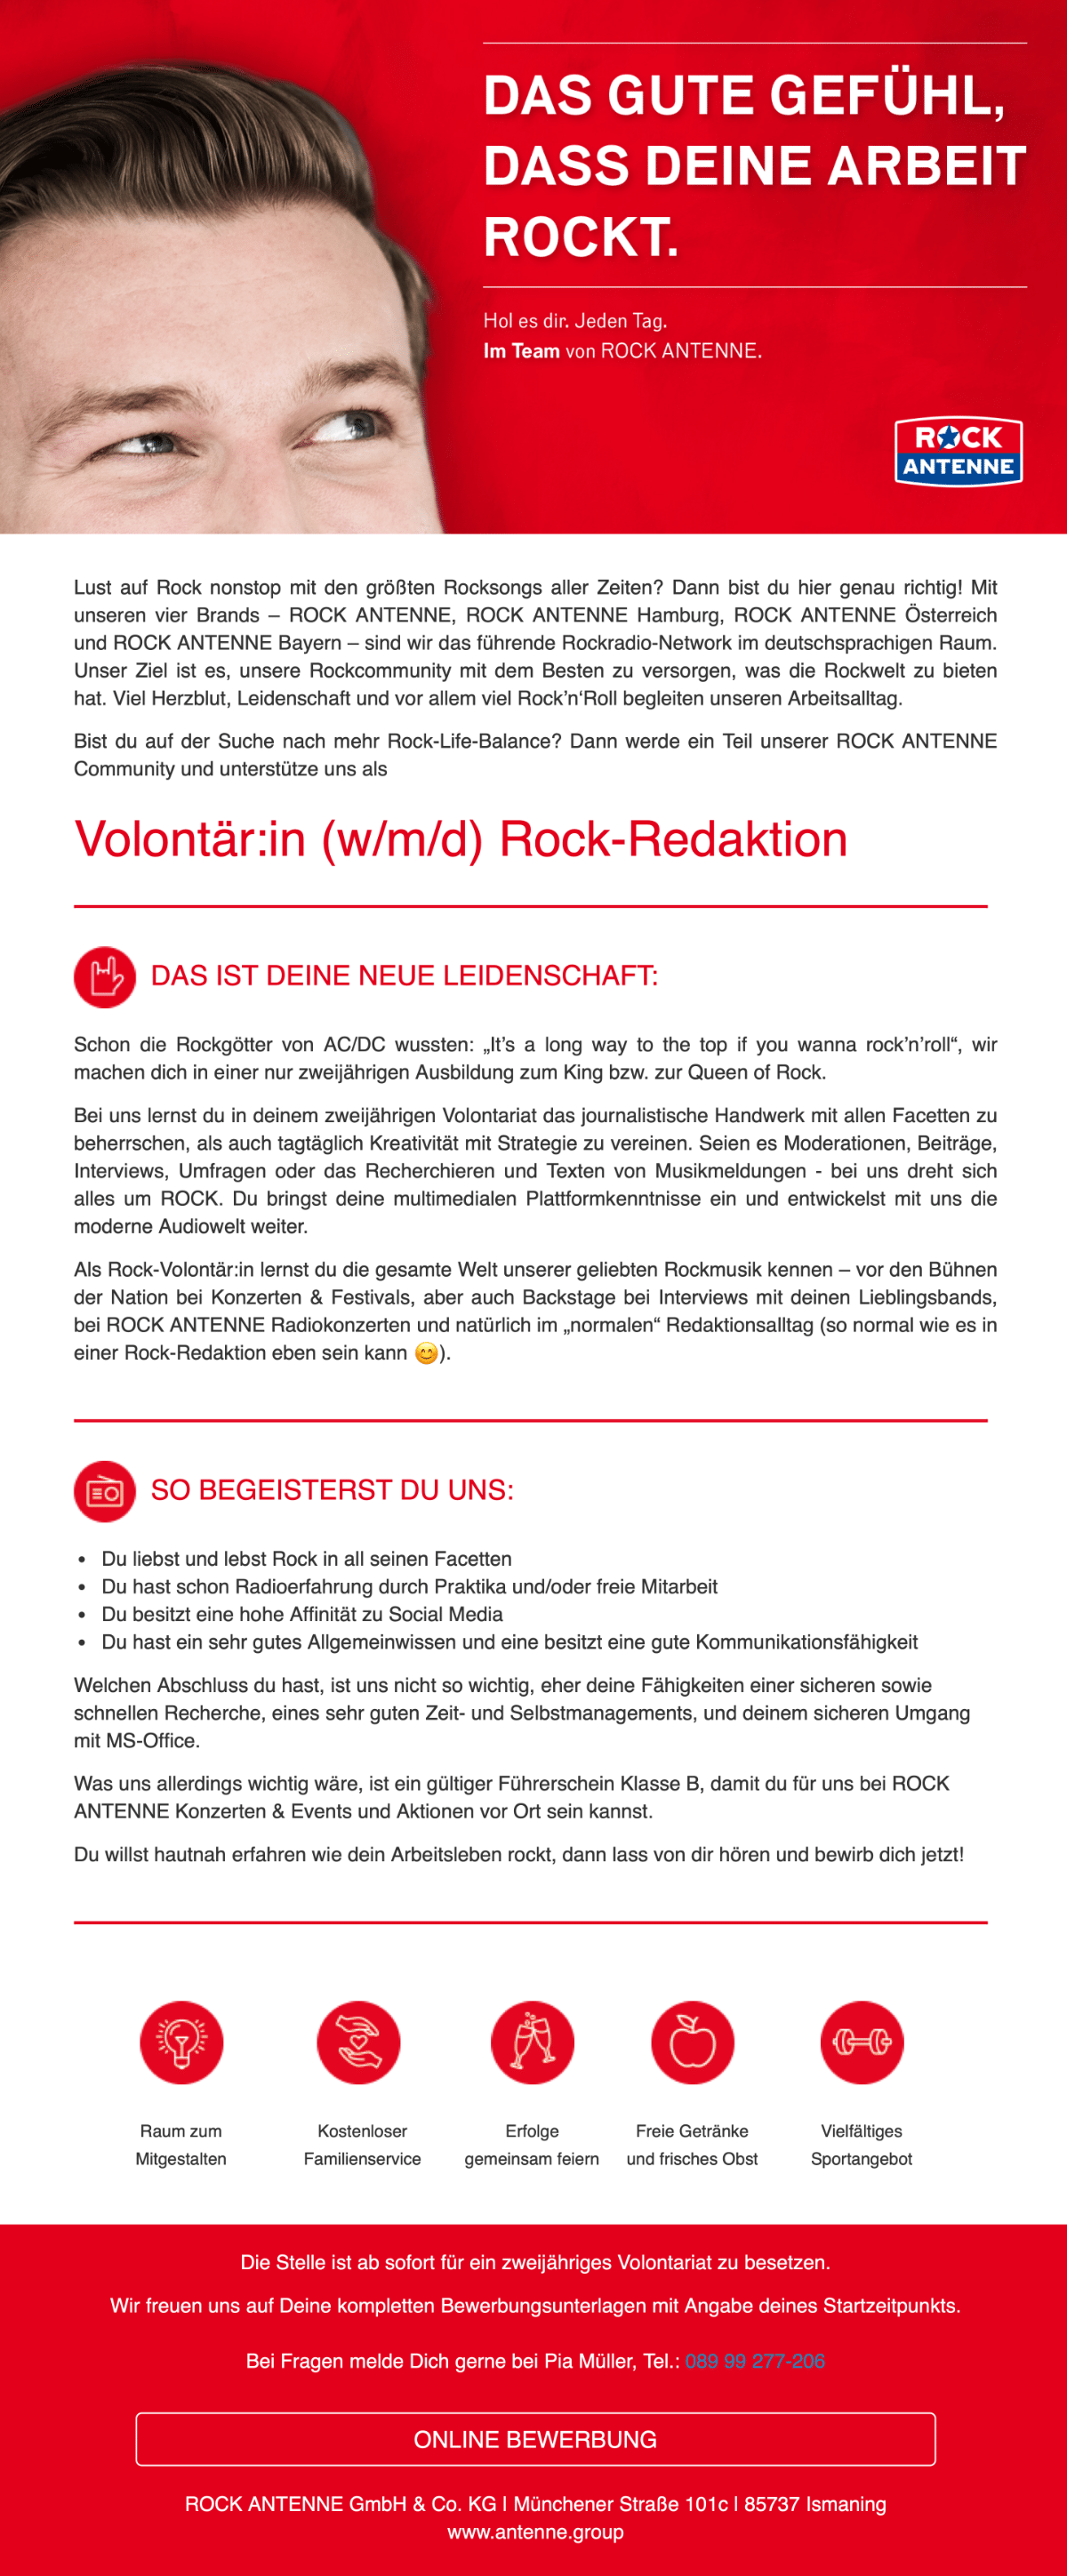 ROCK ANTENNE sucht Volontär:in (w/m/d) Rock-Redaktion